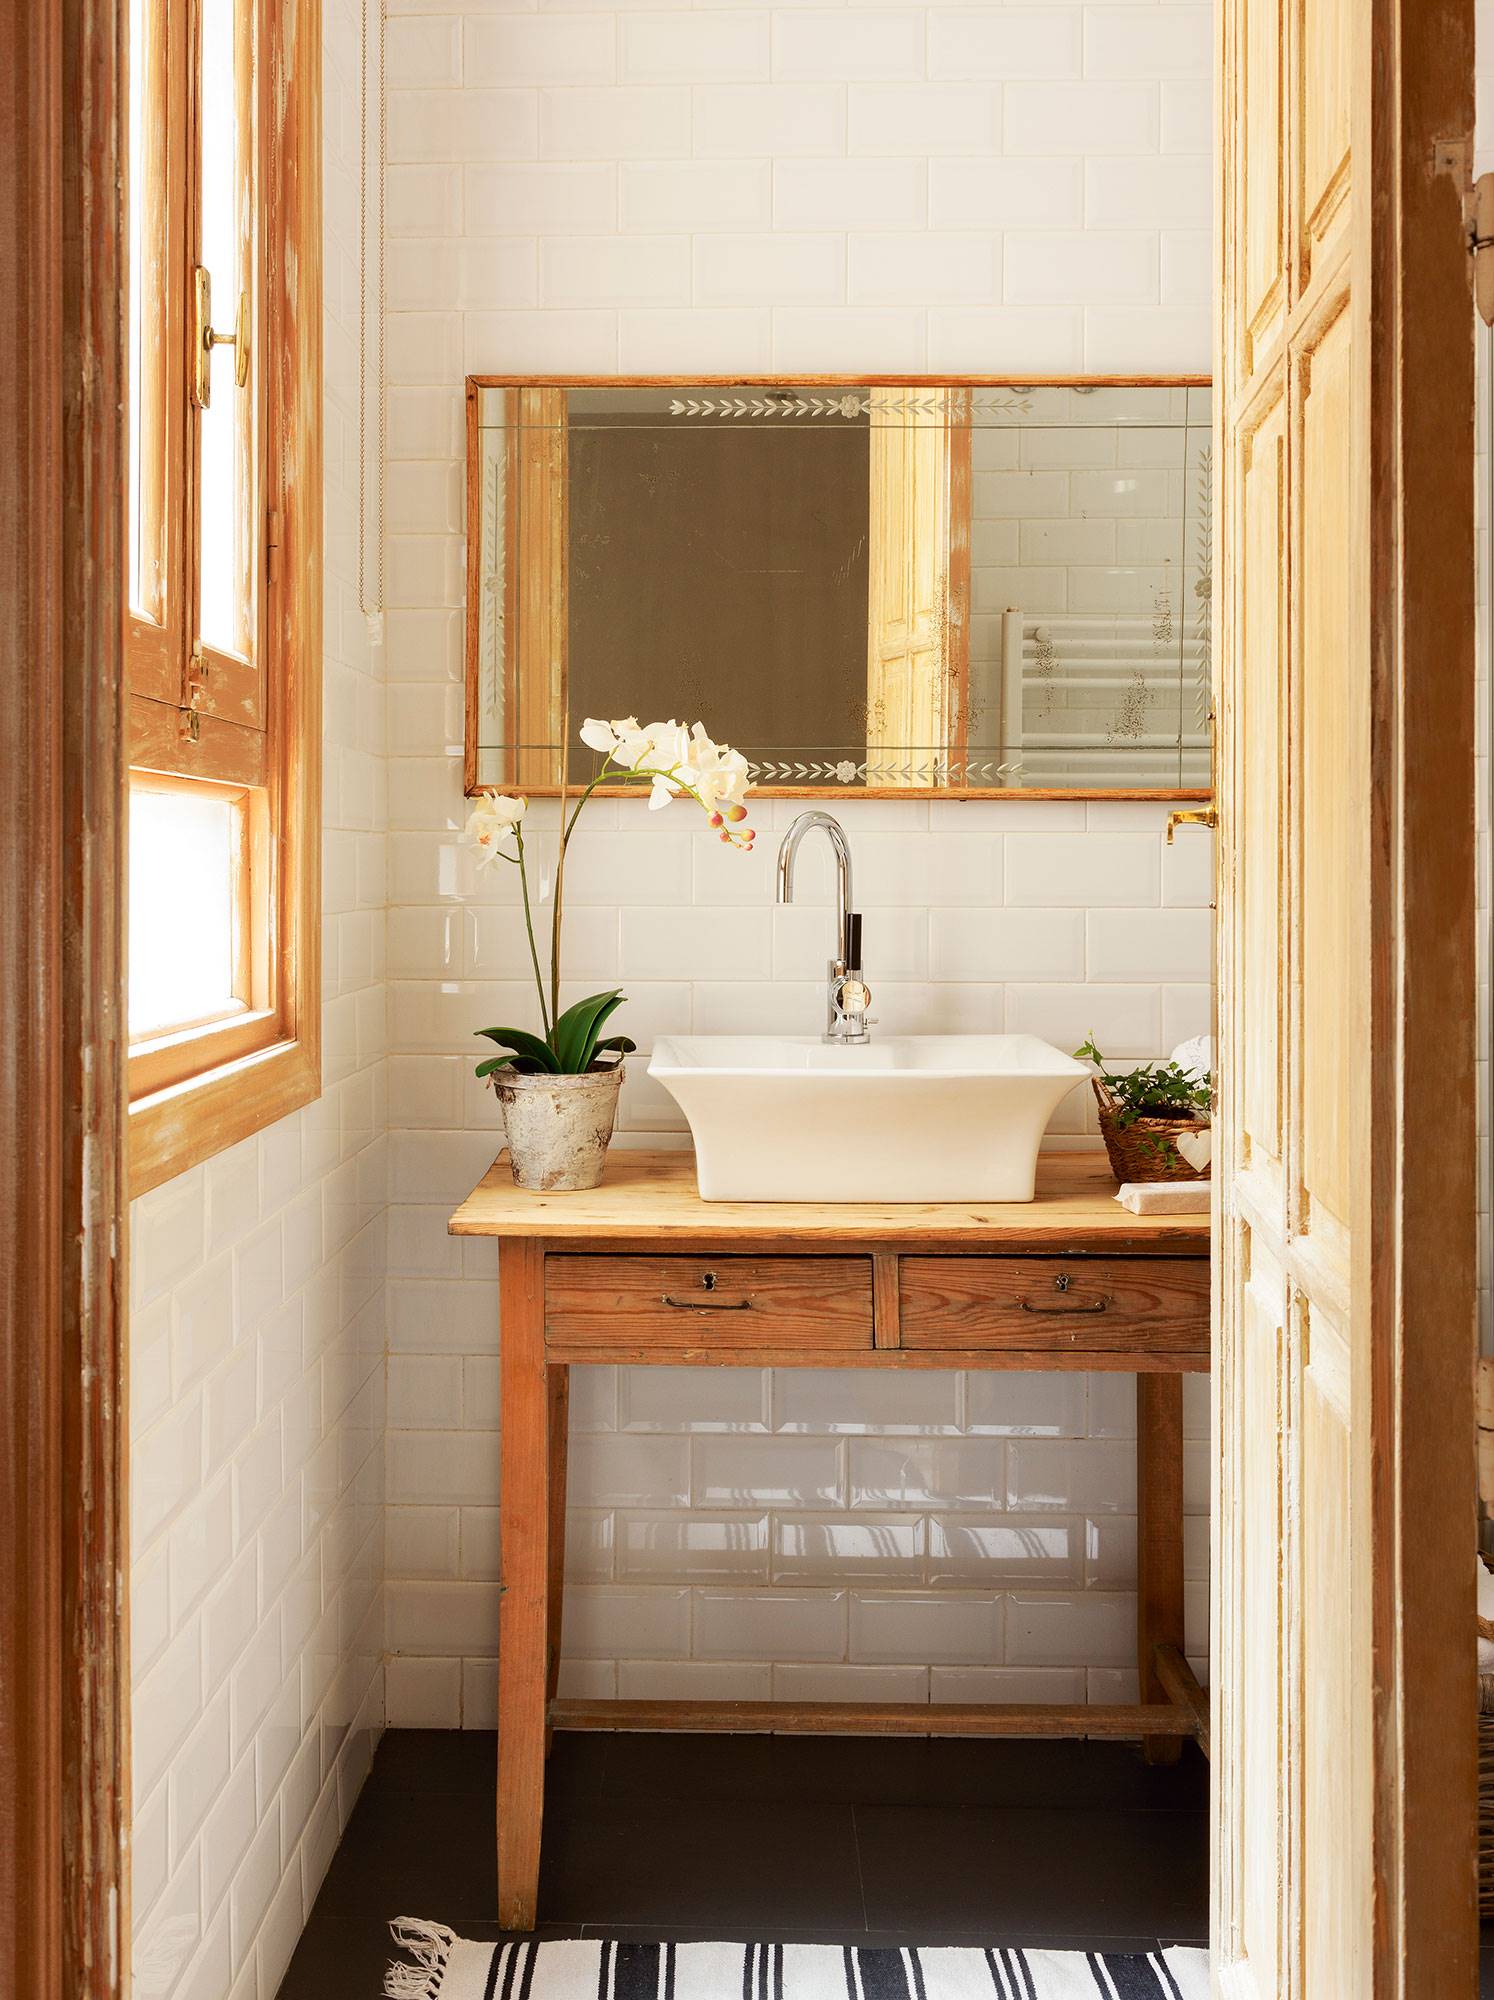 Baño clásico con espejo con marco de madera y planta.